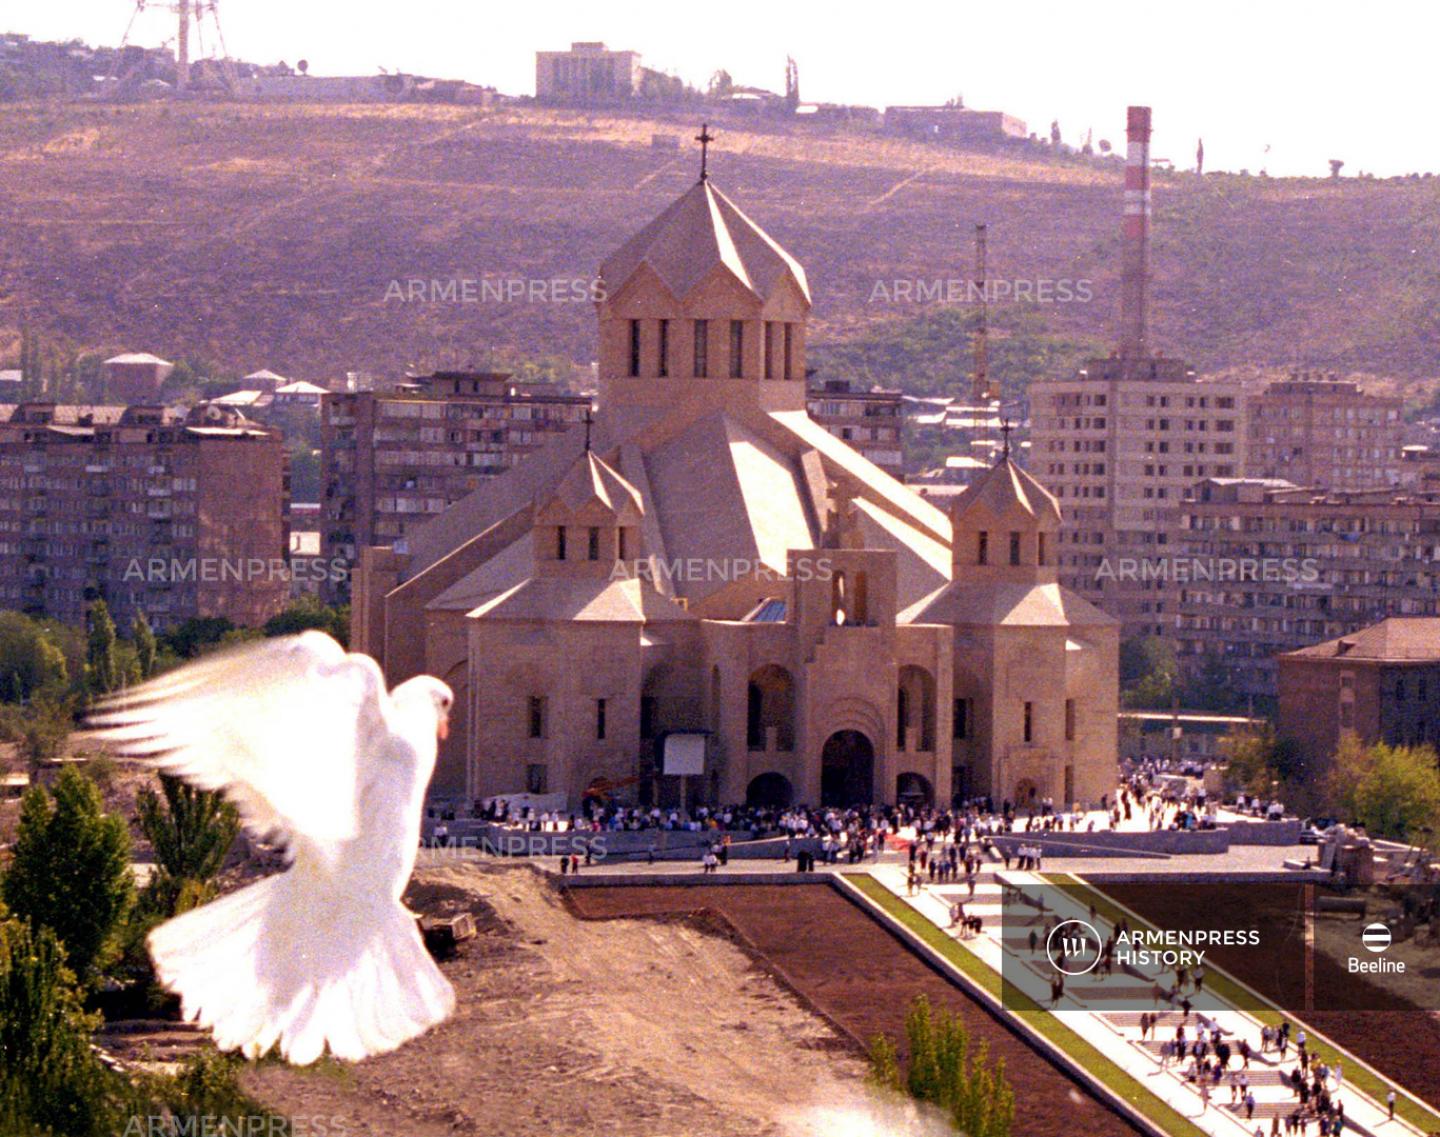 Երևանում օծվեց Սուրբ Գրիգոր Լուսավորիչ Մայր եկեղեցին